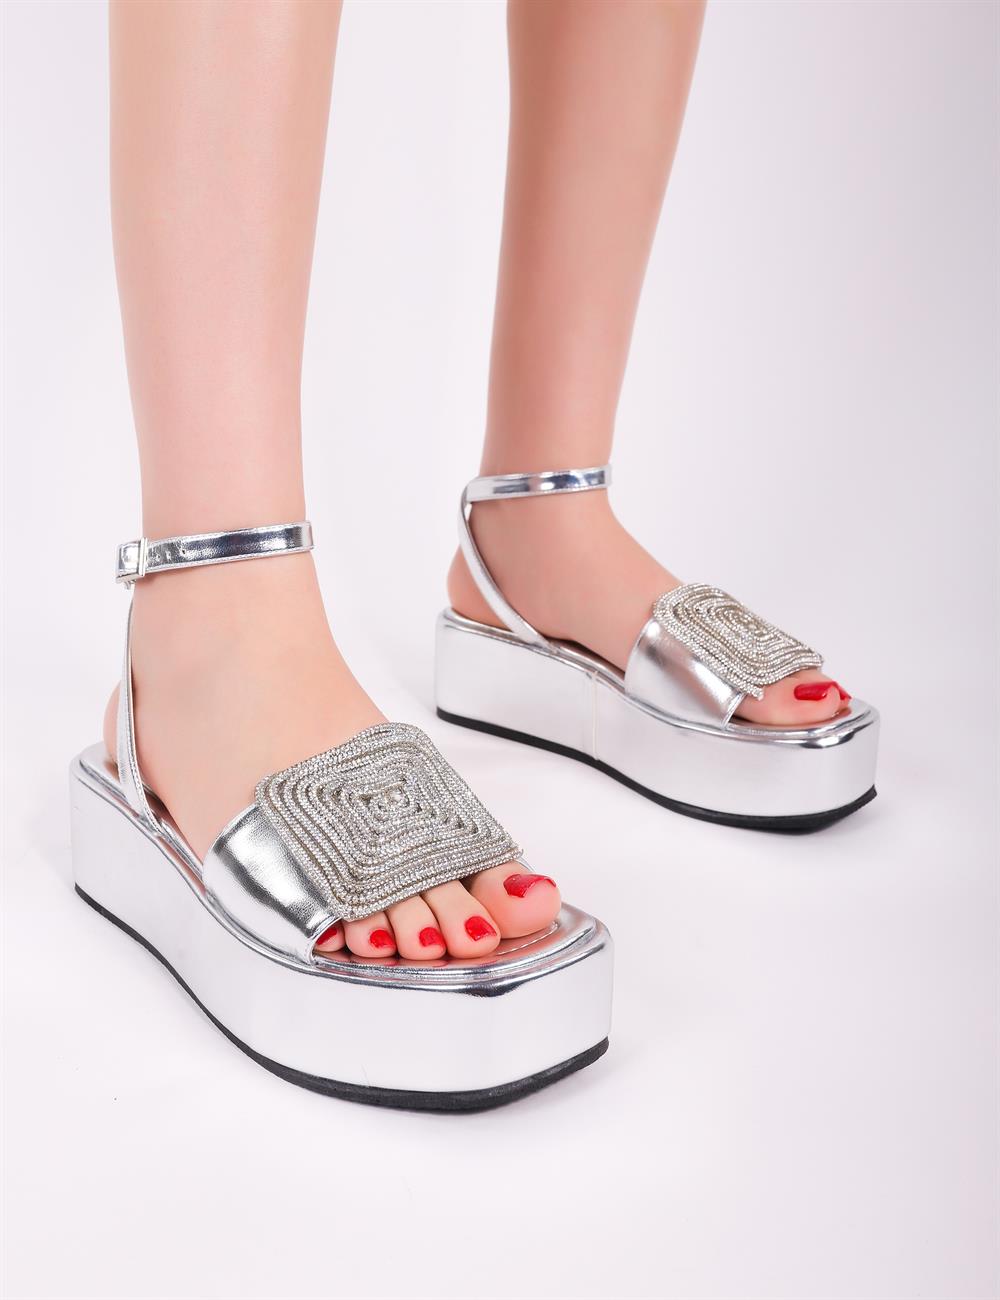 Giselle Kristal Taşlı Topuklu Sandalet Gümüş - KADIN AYAKKABI